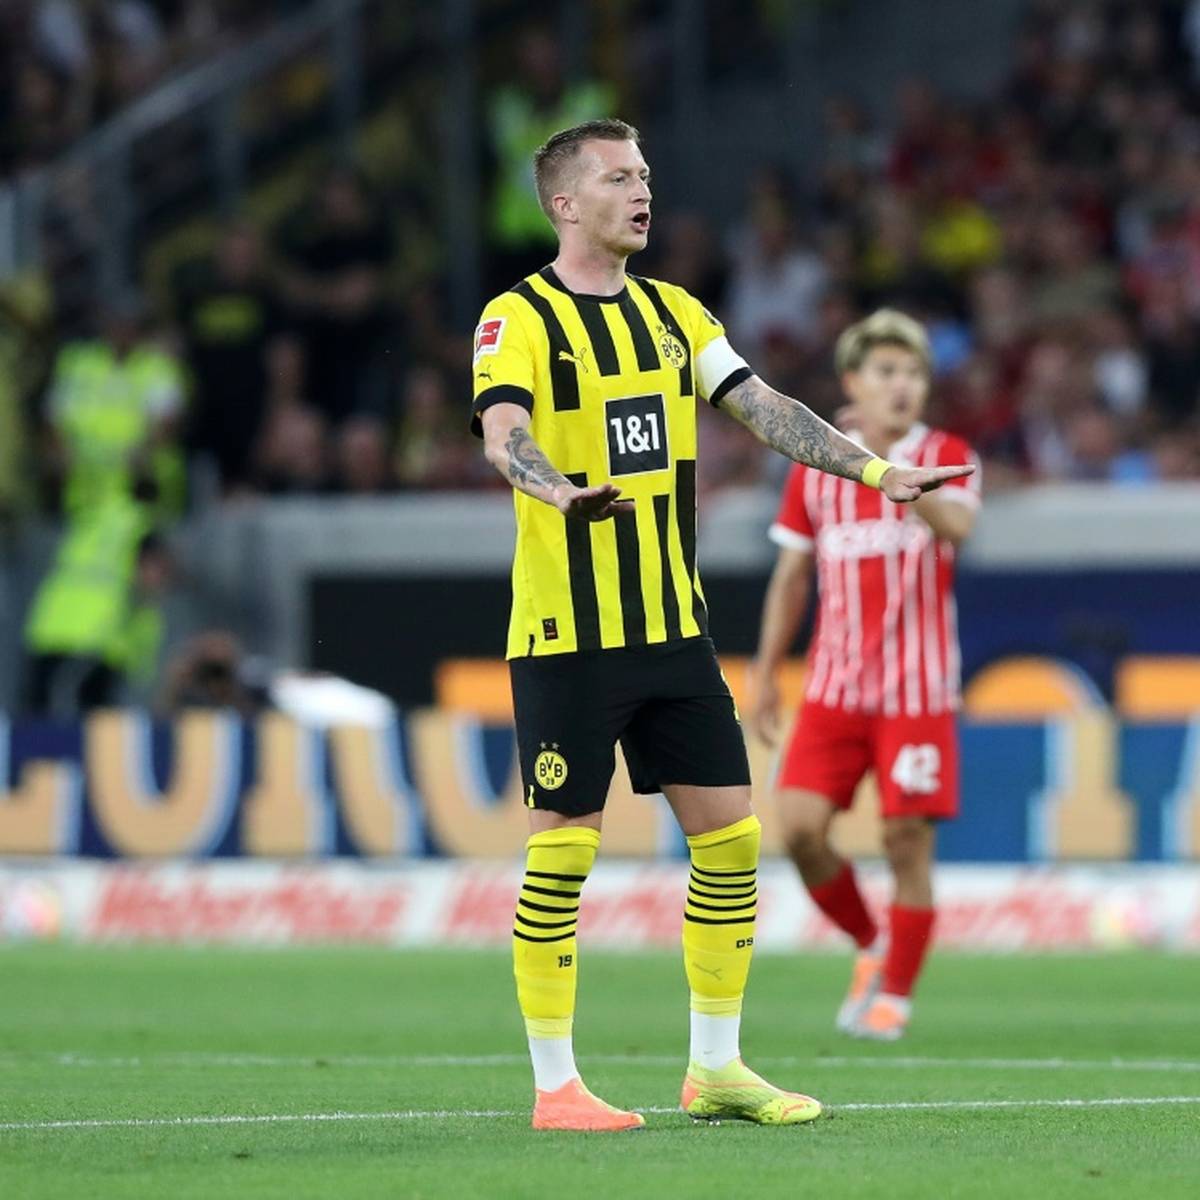 Marco Reus von Borussia Dortmund hat sich trotz der Dominanz von Bayern München gegen eine Einführung von Fußball-Play-offs ausgesprochen.